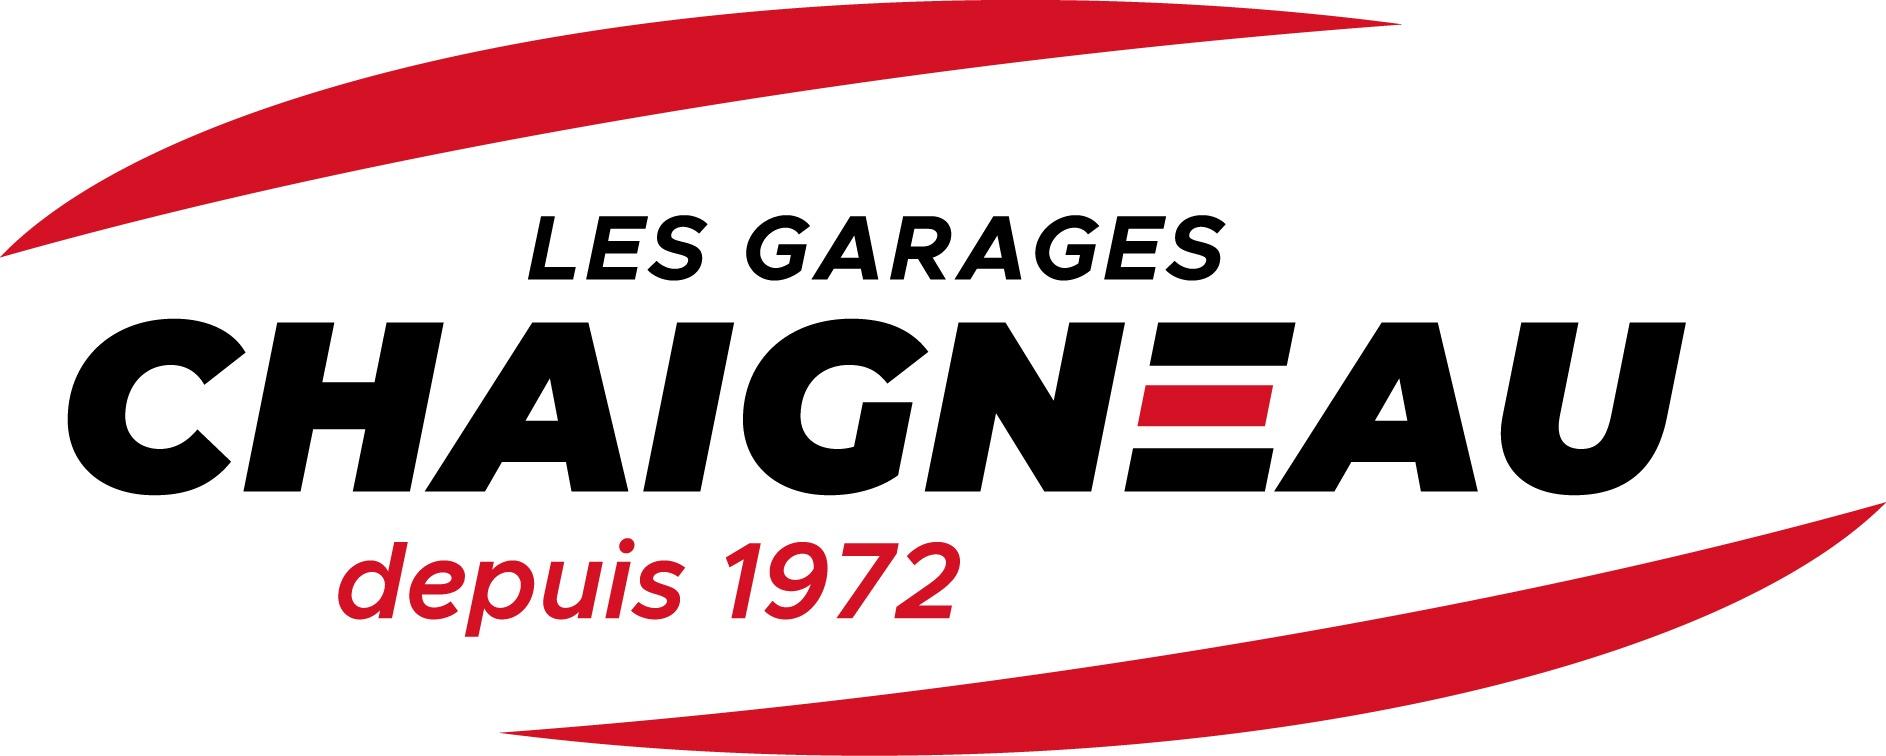 Toyota - Les Garages Chaigneau - Chauray    Chauray